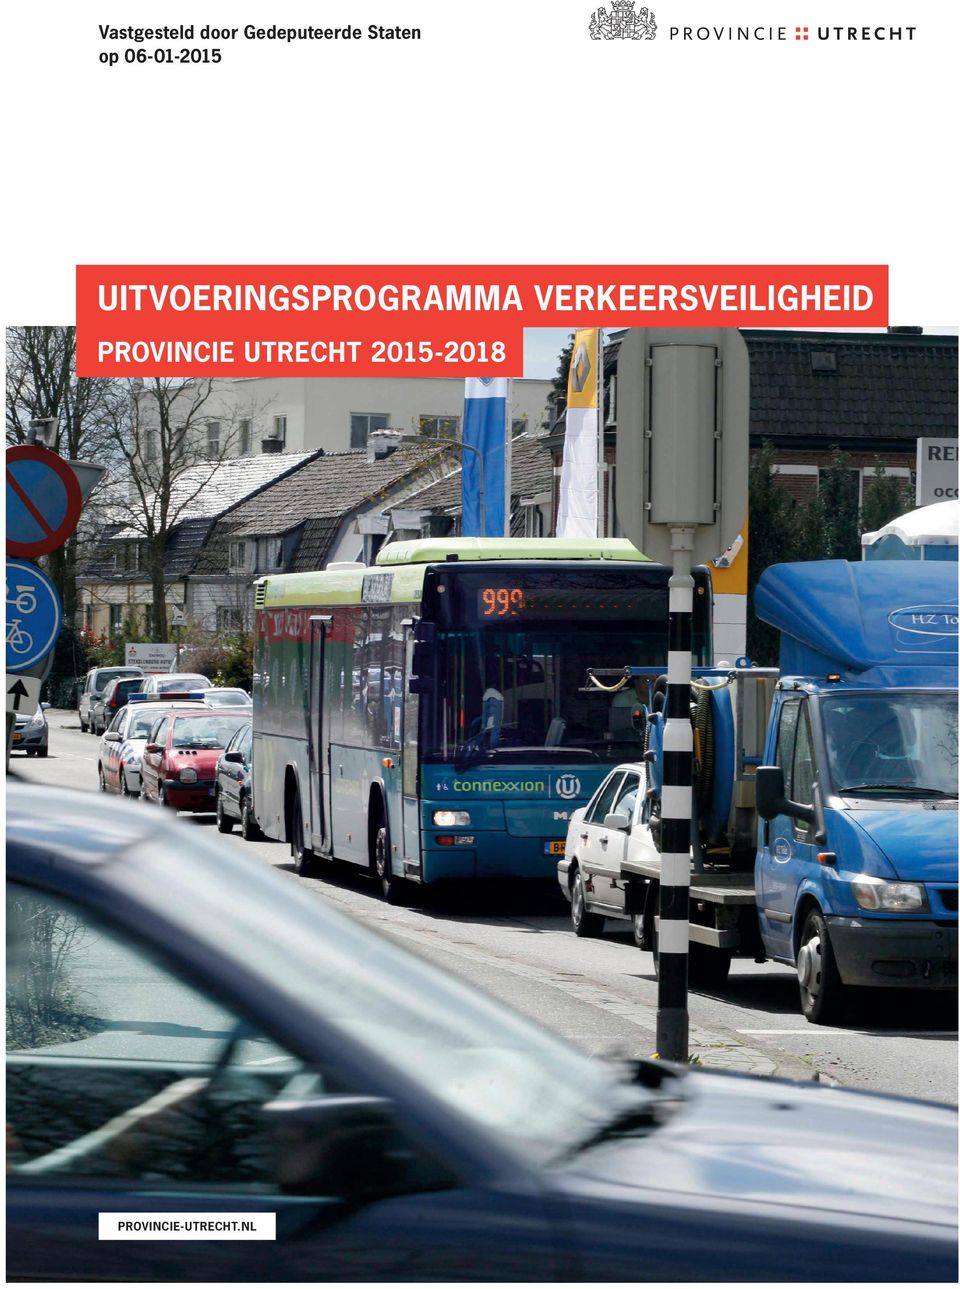 Provincie Utrecht Postbus 80300, 3508 TH Utrecht T 030 25 89 111